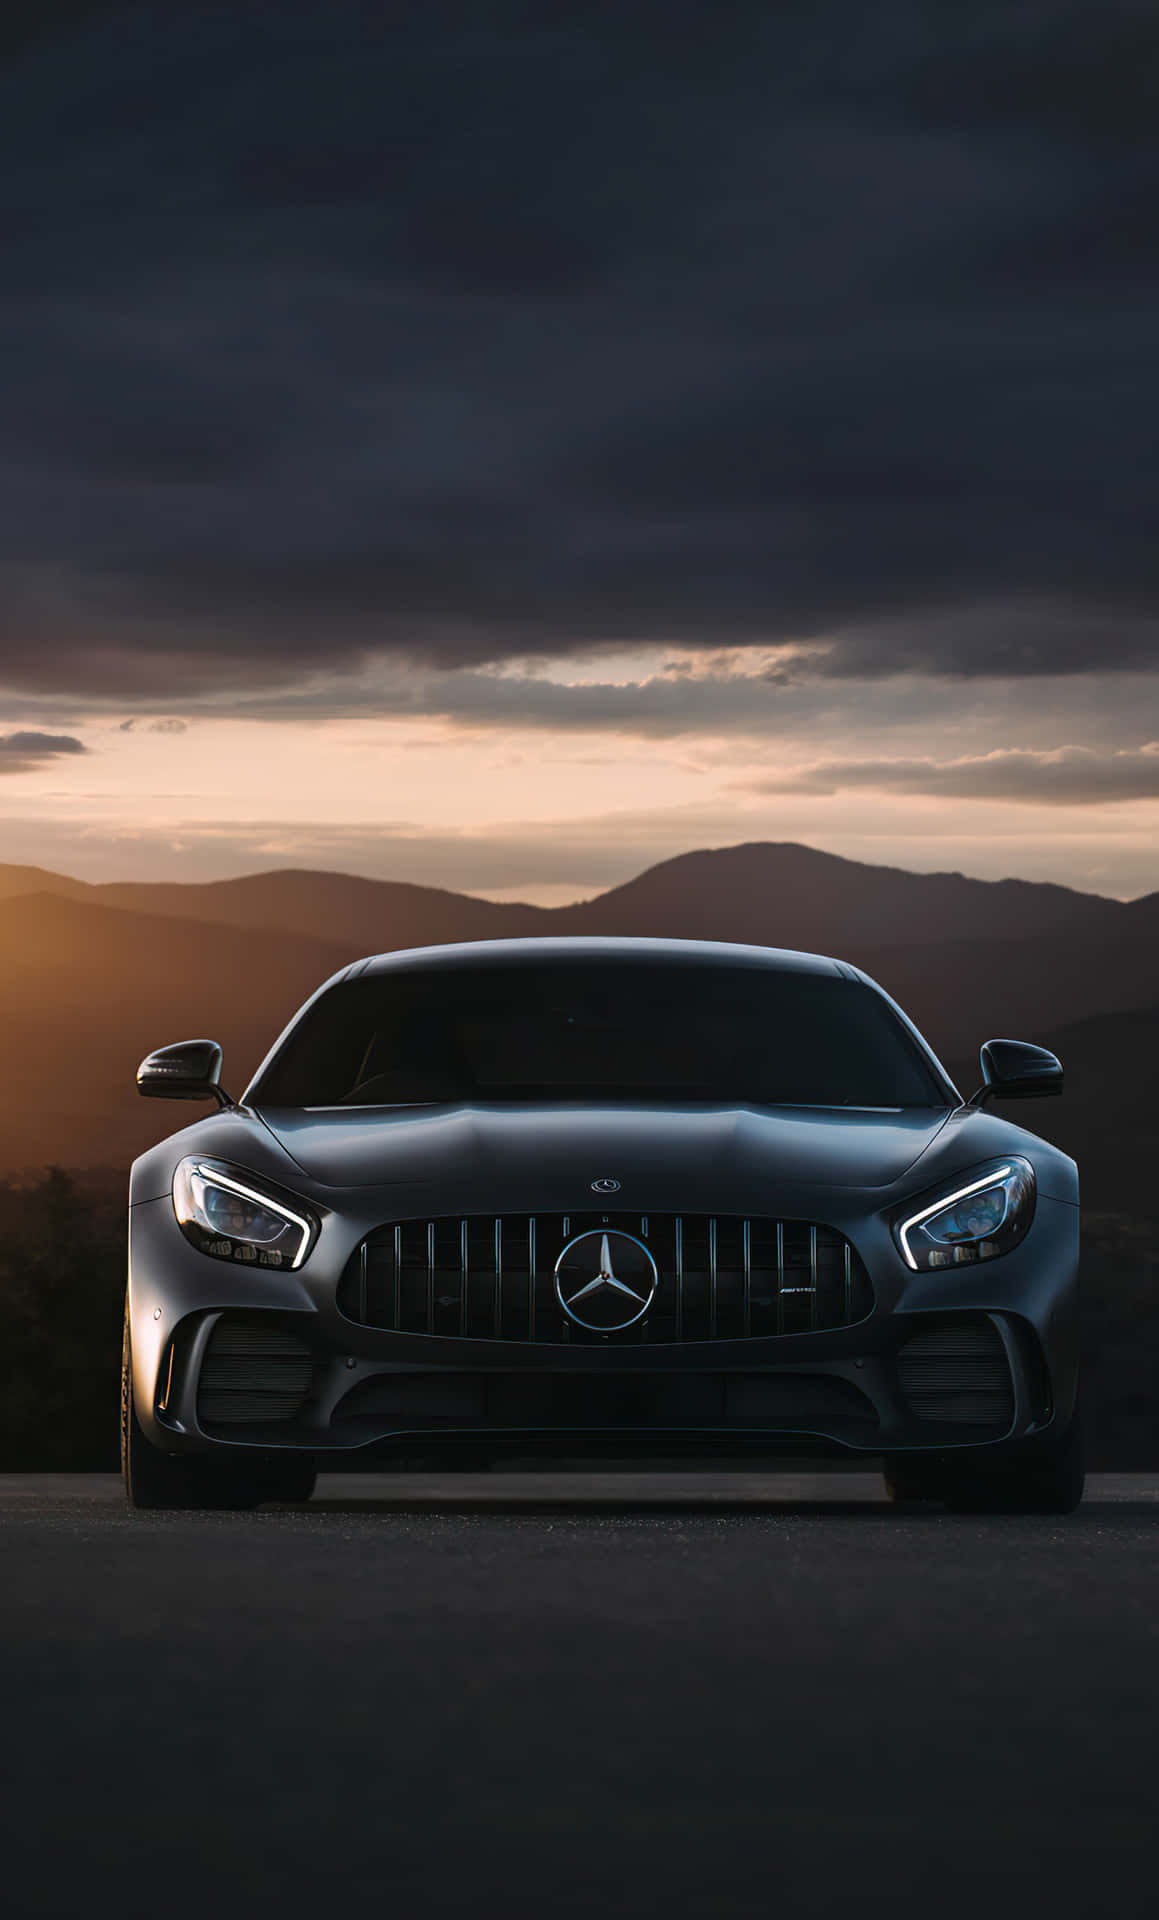 !Få Mercedes Benz Iphone i dag og få stil og præstation! Wallpaper